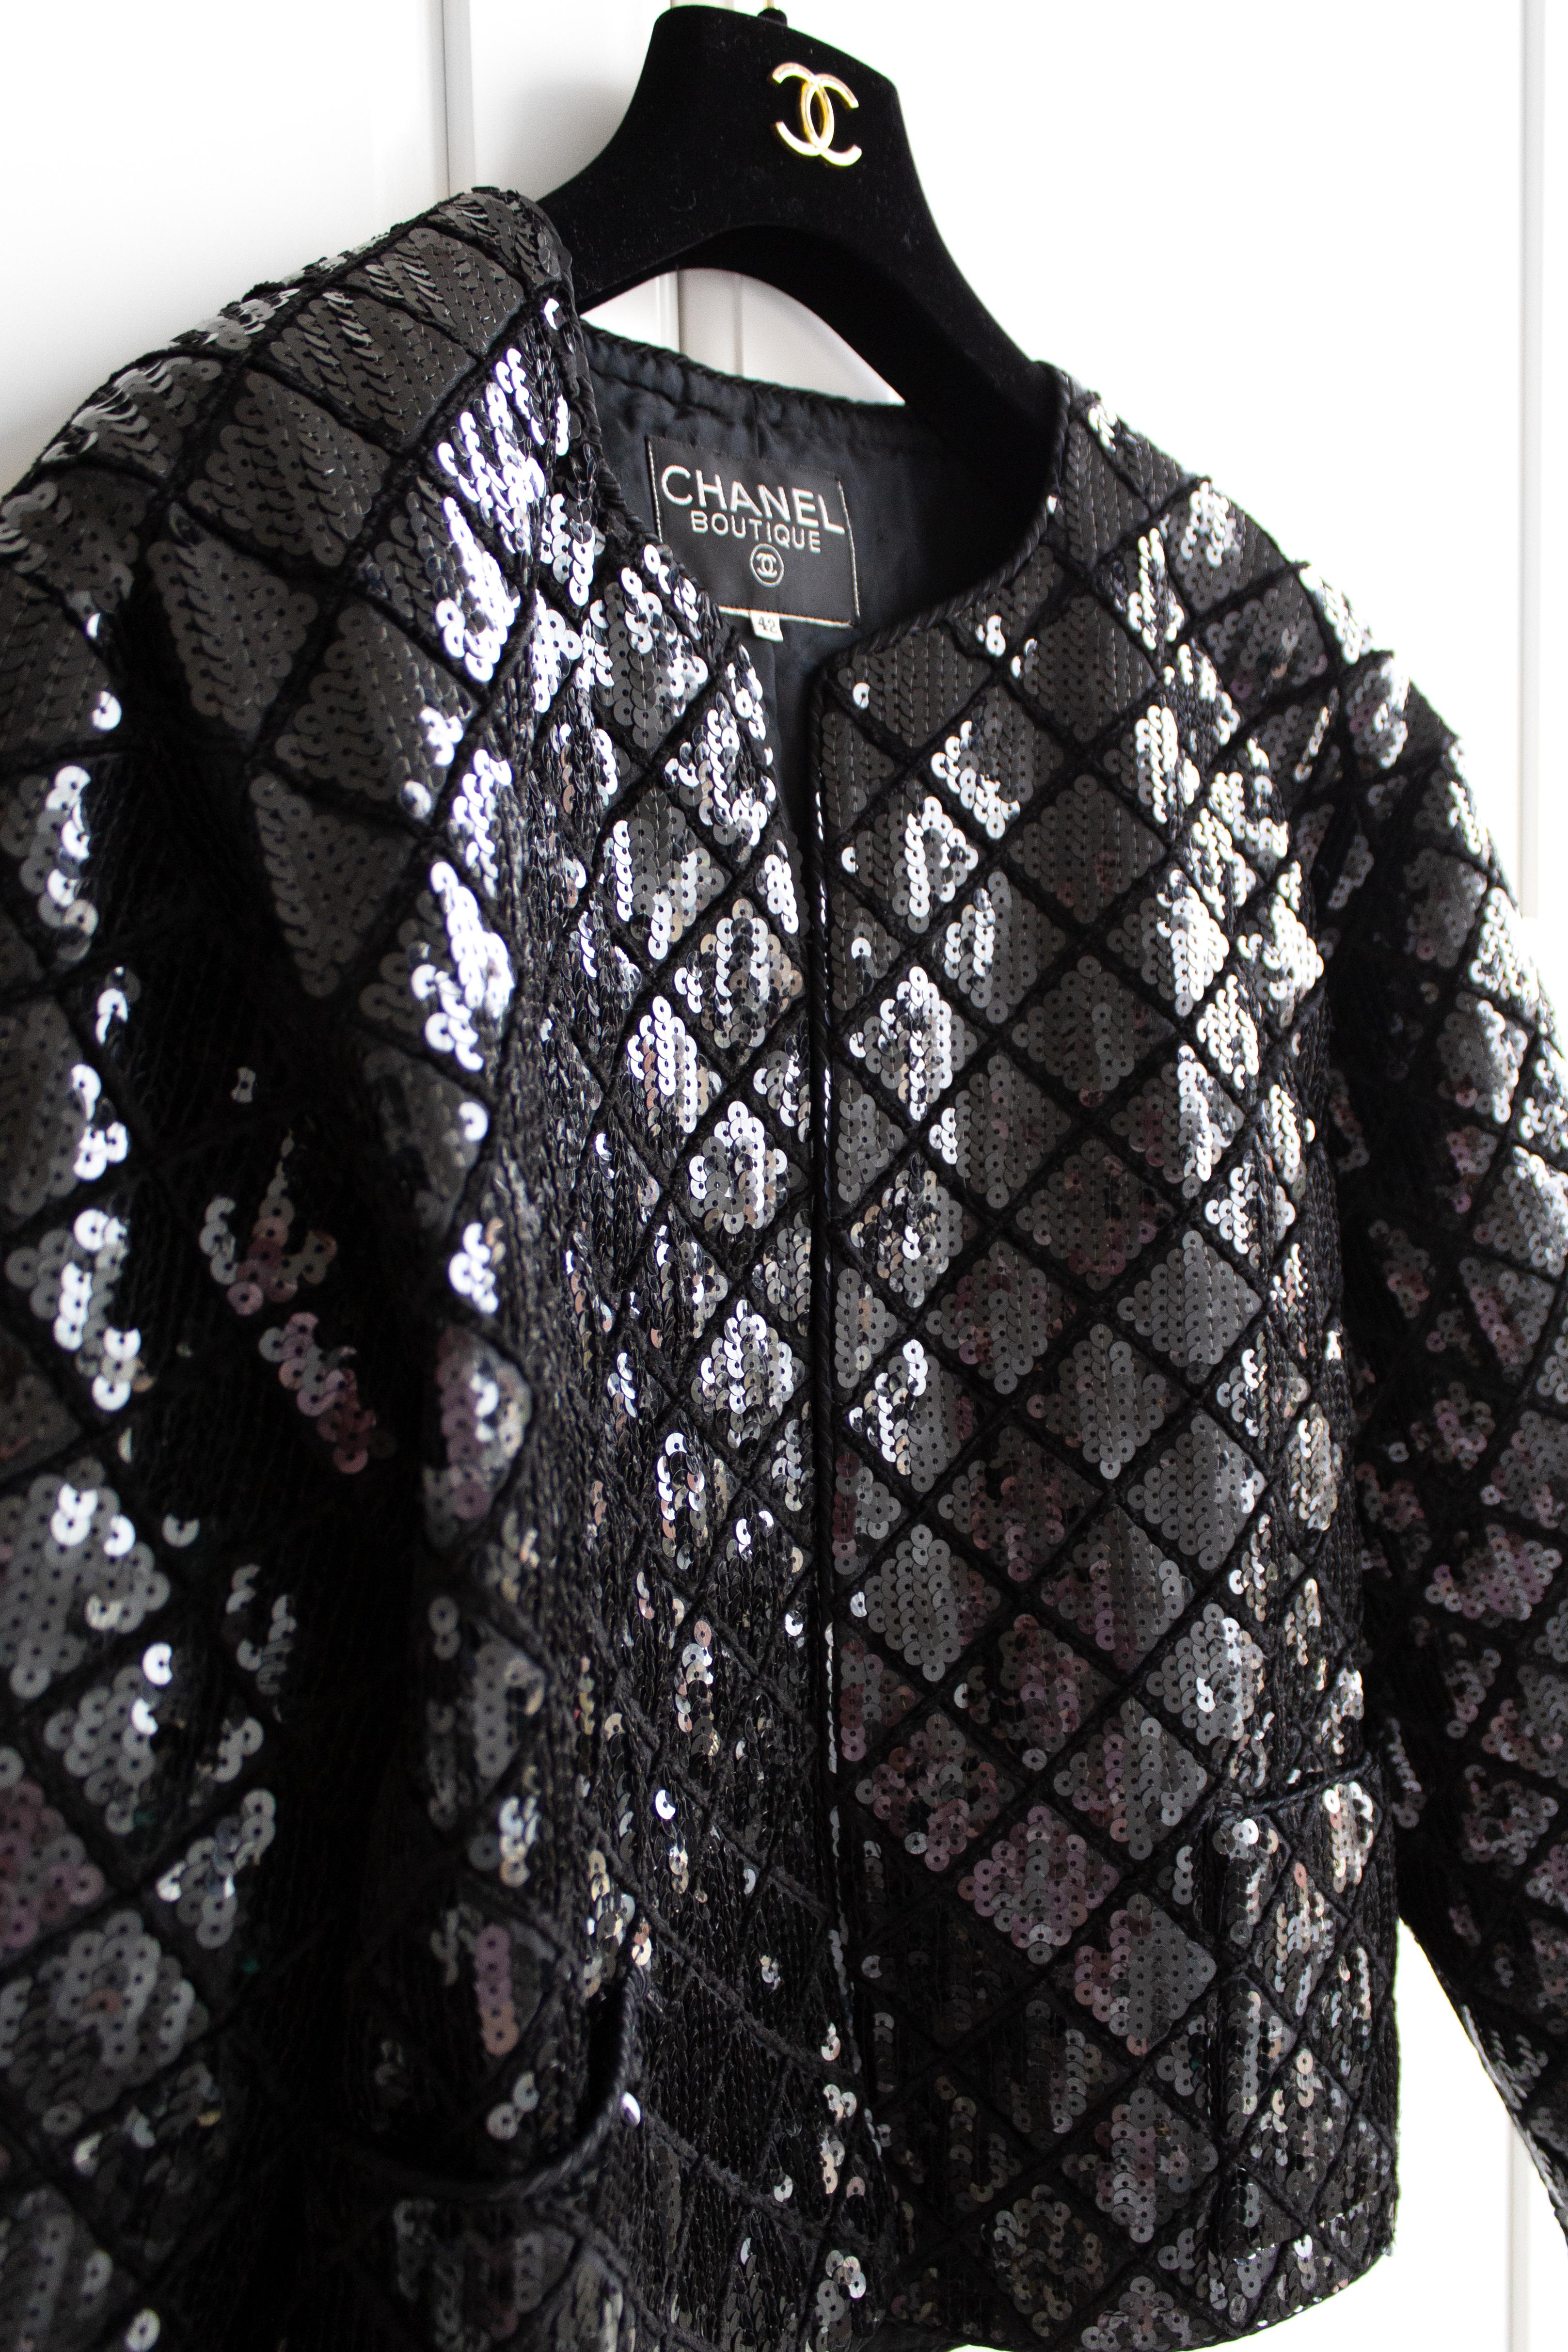 Rare Chanel Vintage S/S 1987 Black Quilted Sequin Embellished Jacket 3